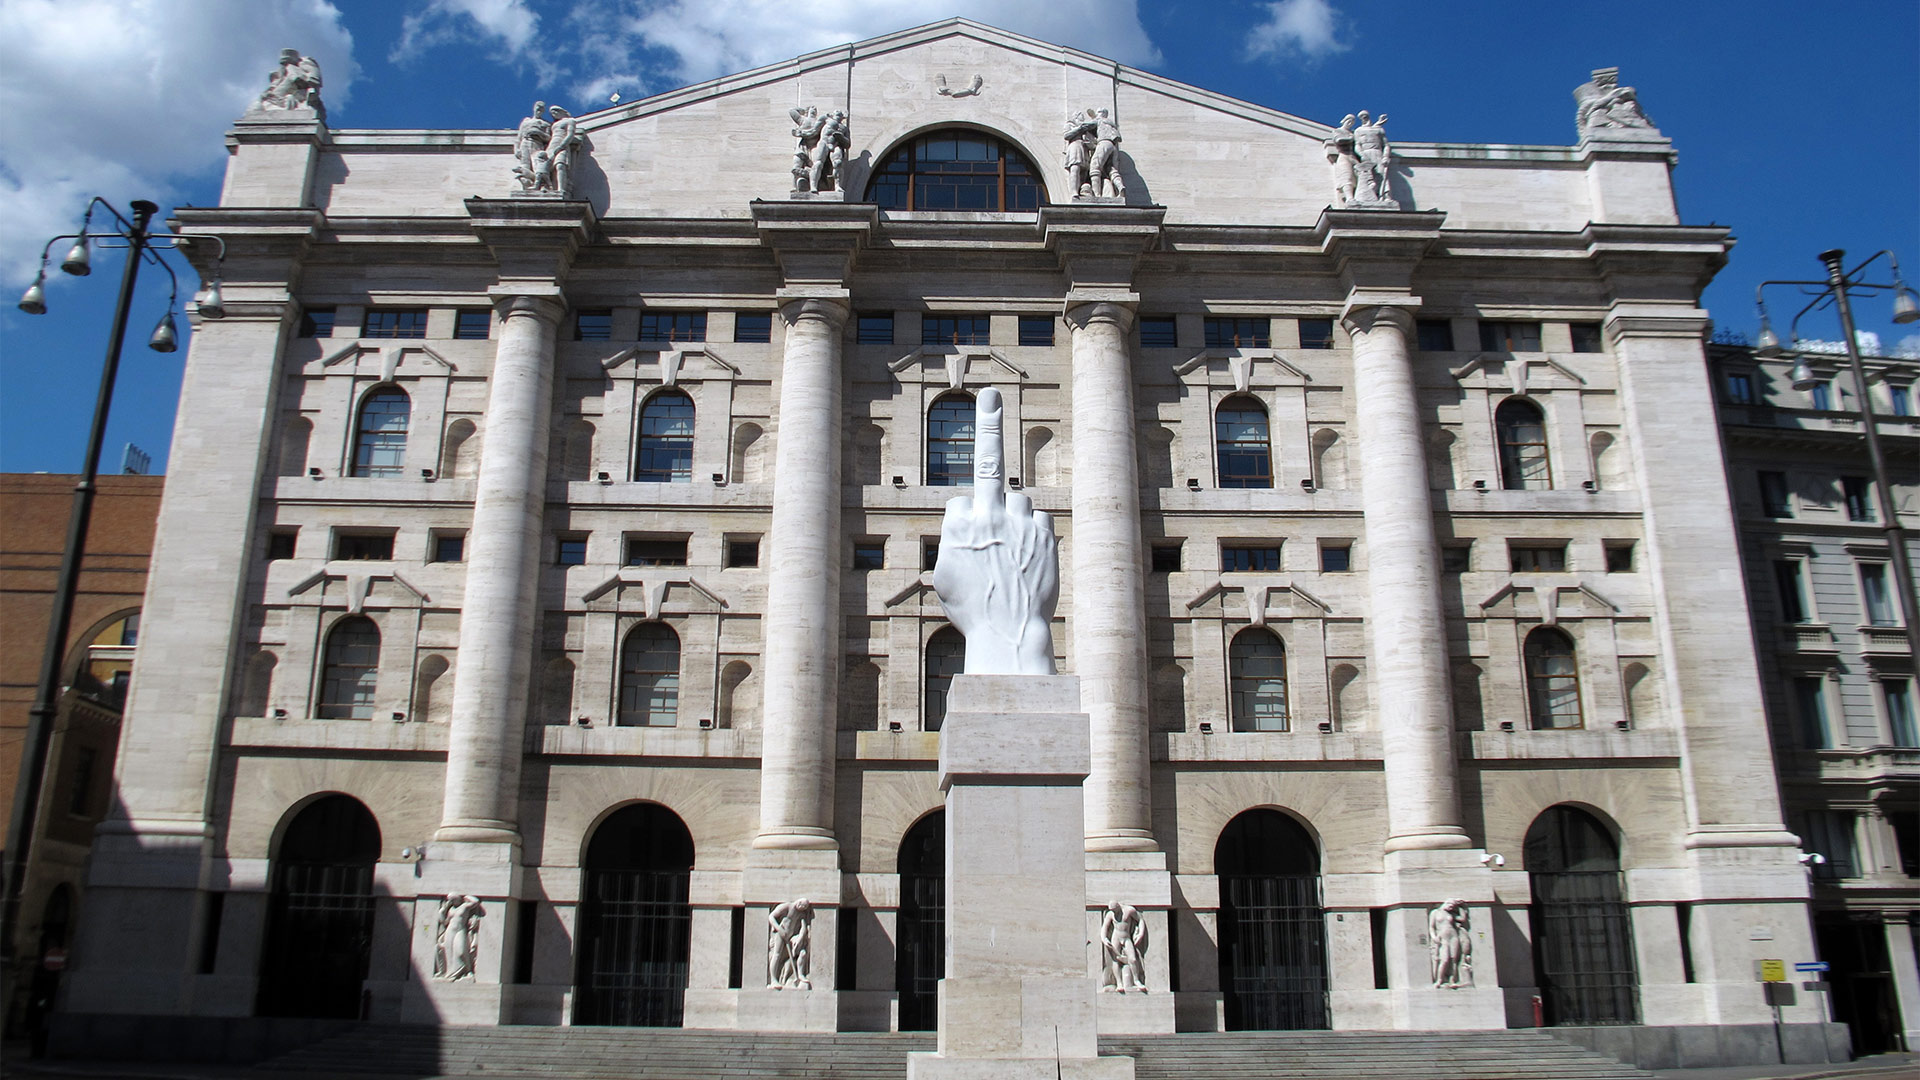 Fassade der Börse Mailand, mit der Skulptur von Maurizio Cattelan | picture alliance / dpa Themendie